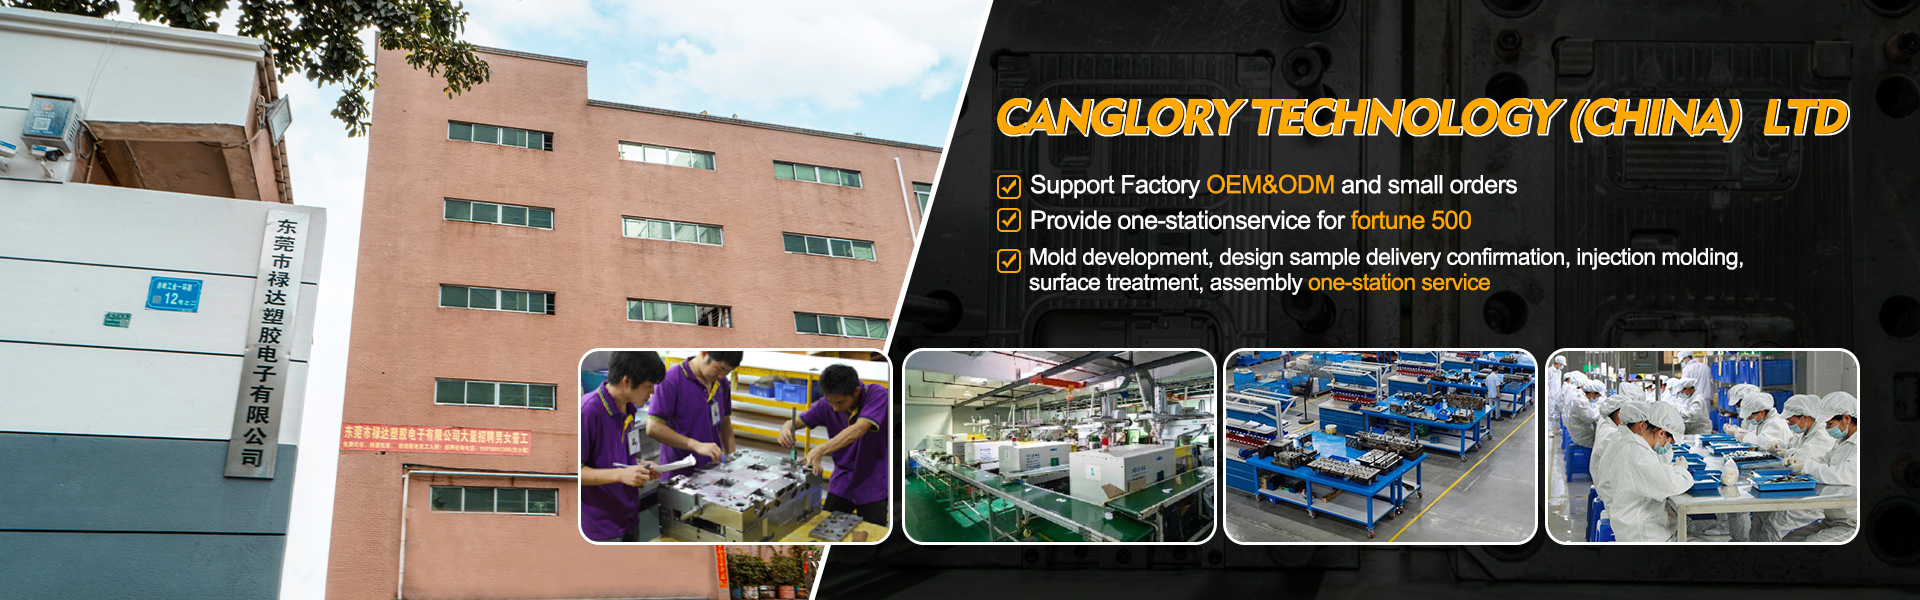 Σπίτι - Χύτευση, έγχυση, κατασκευαστής αρχικού εξοπλισμού|Canglory Technology (China) Ltd